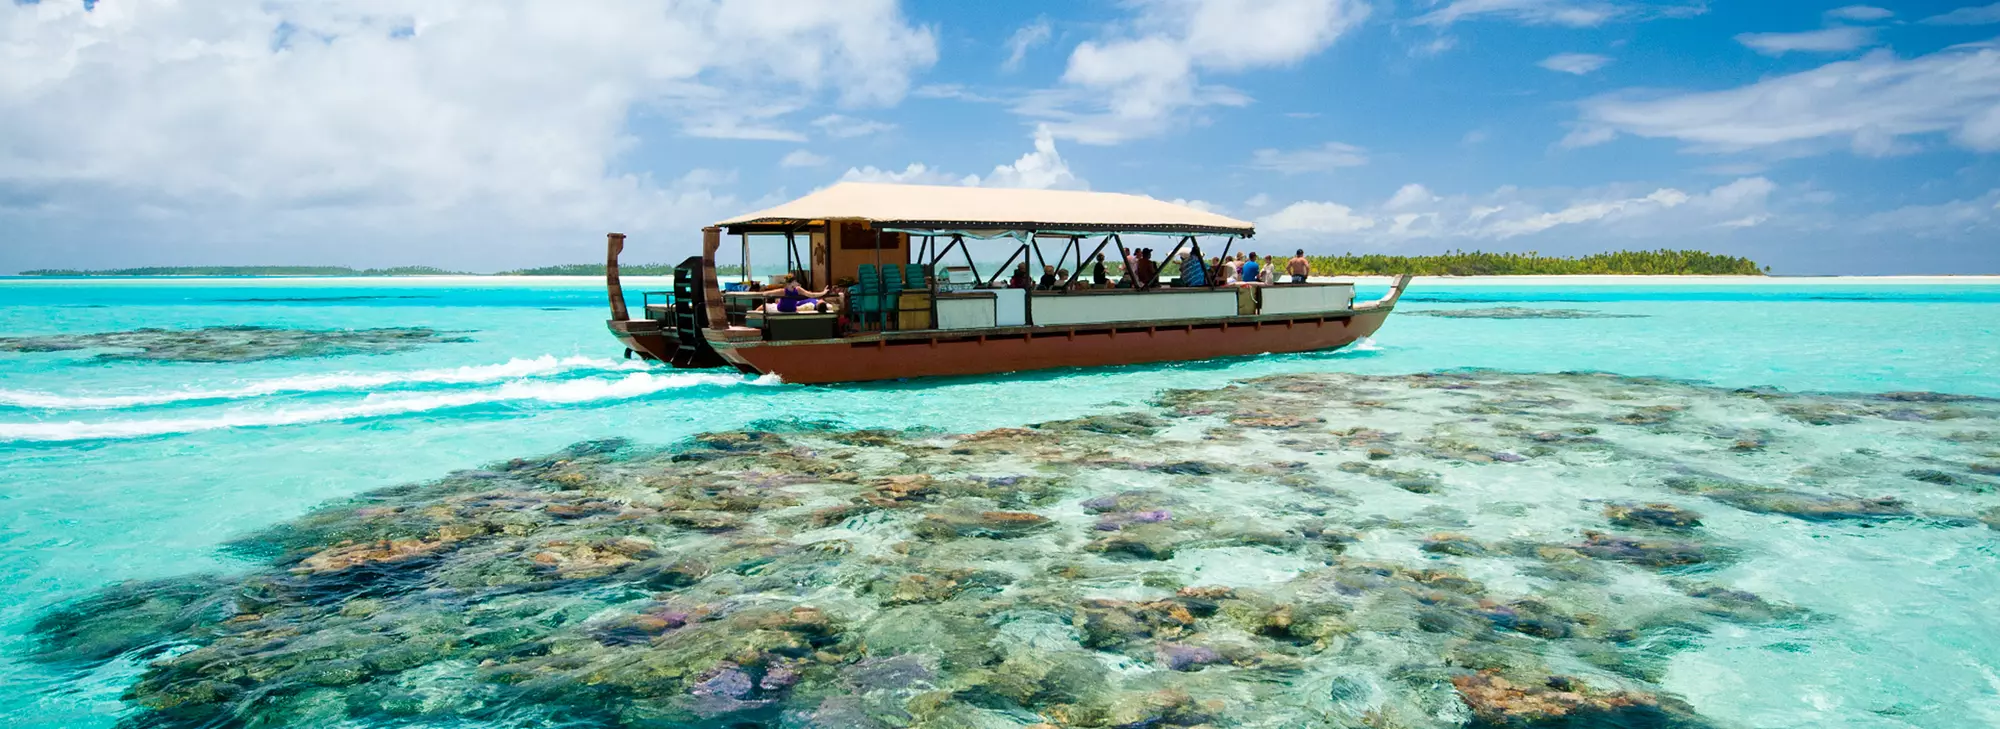 Aitutaki Day Tour vaka on lagoon 2